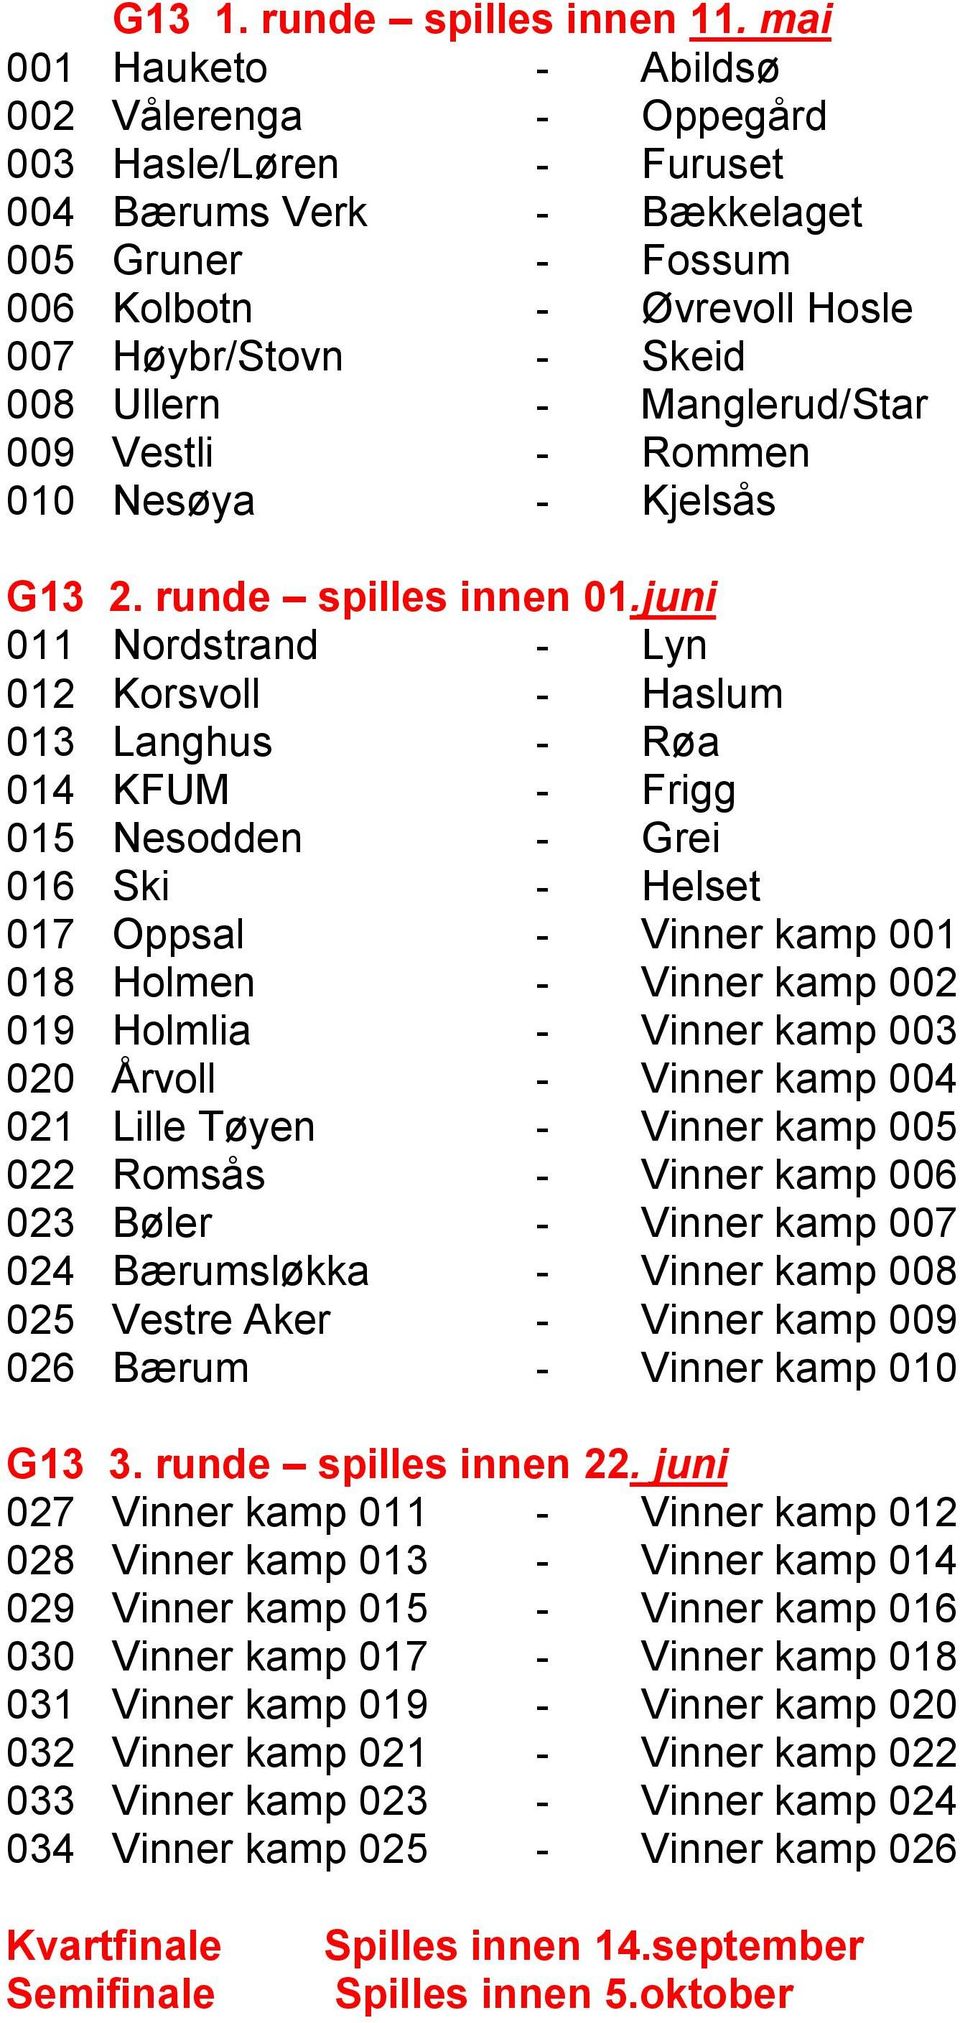 Manglerud/Star 009 Vestli - Rommen 010 Nesøya - Kjelsås G13 2. runde spilles innen 01.